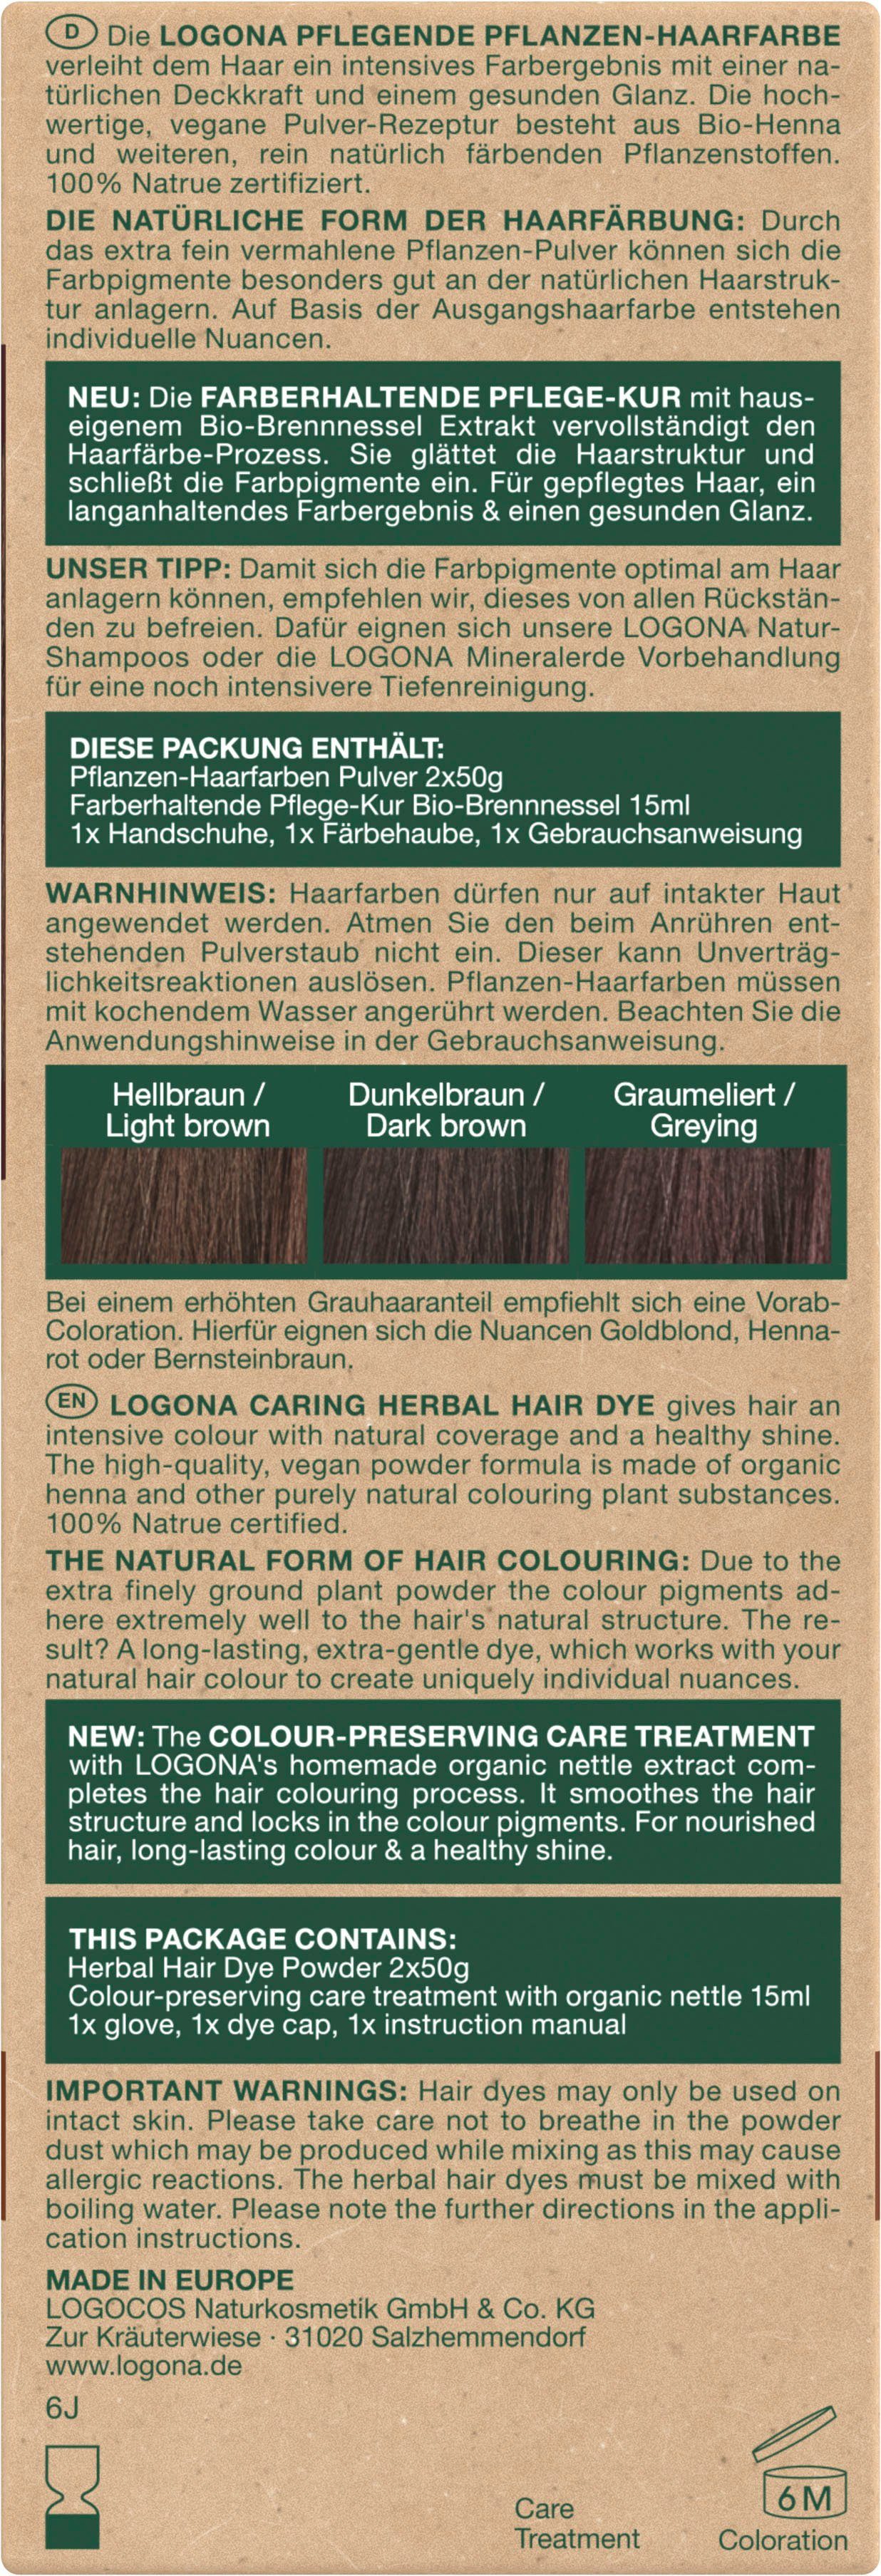 LOGONA Haarfarbe Pflanzen-Haarfarbe Pulver Kaffeebraun 10